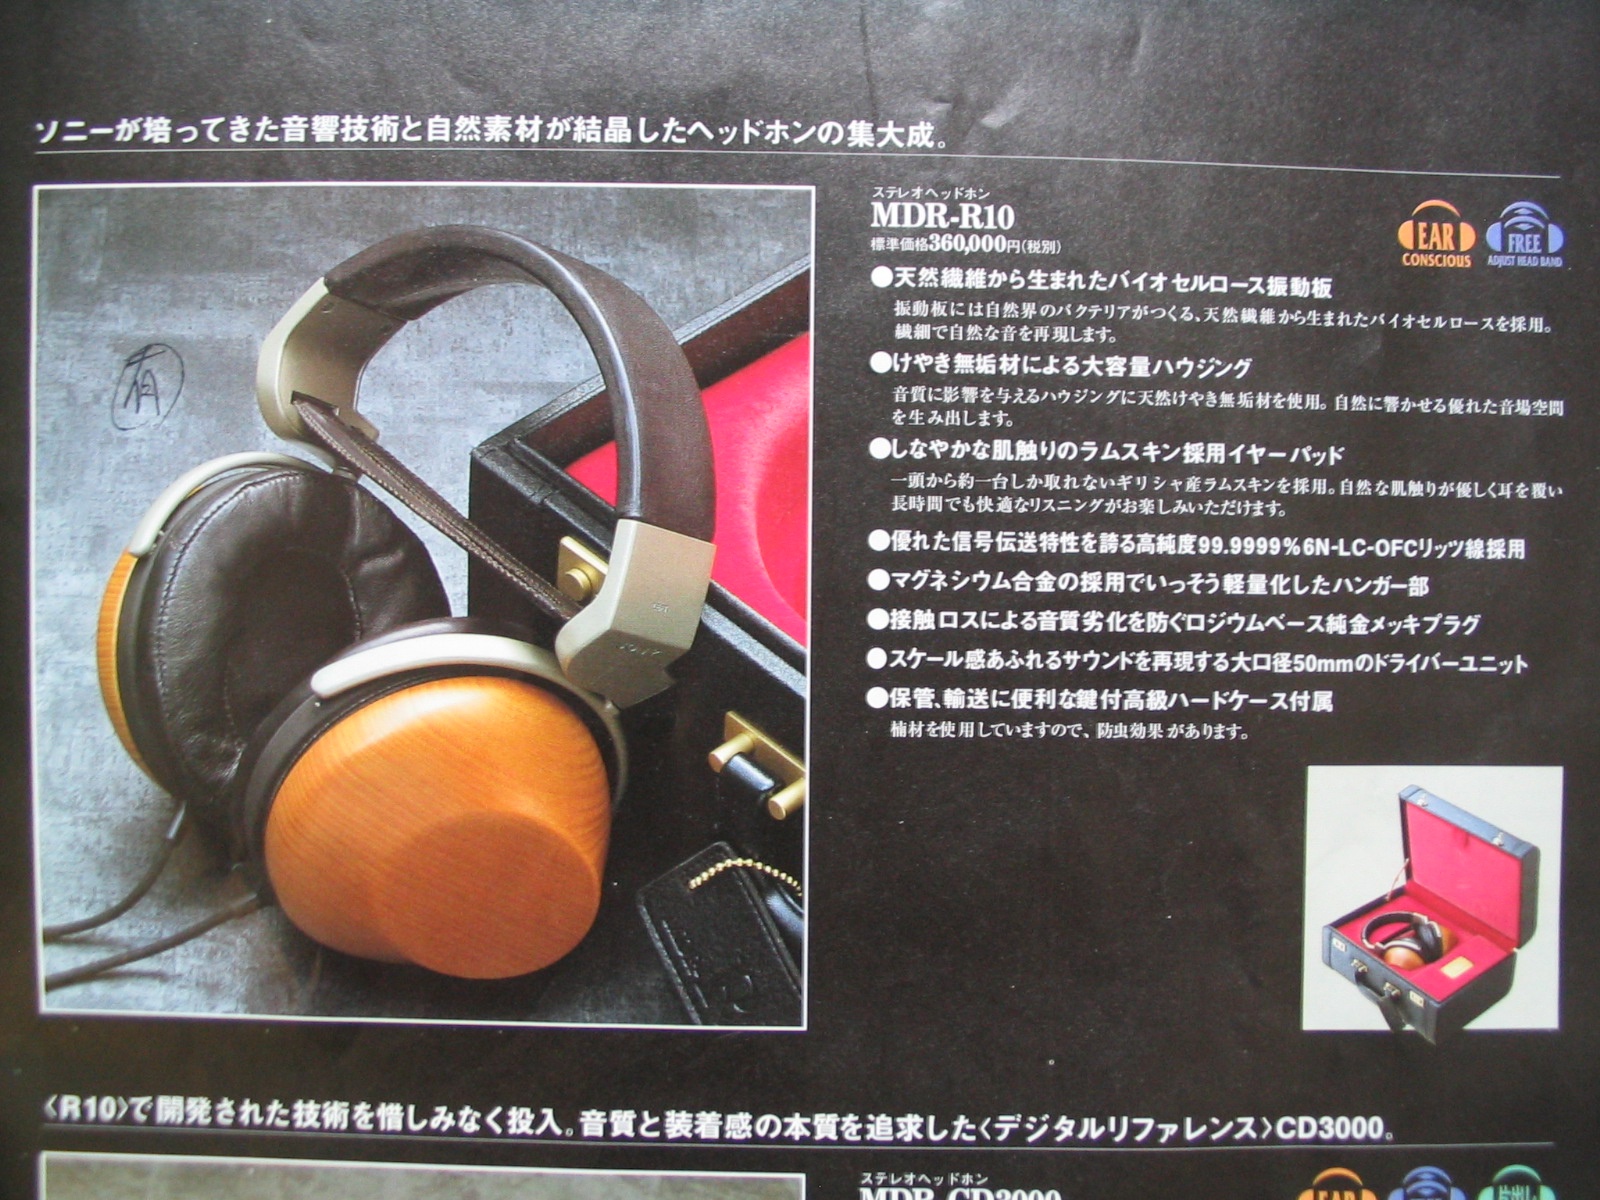 Sony-MDR-R10-brochure-jap.jpg